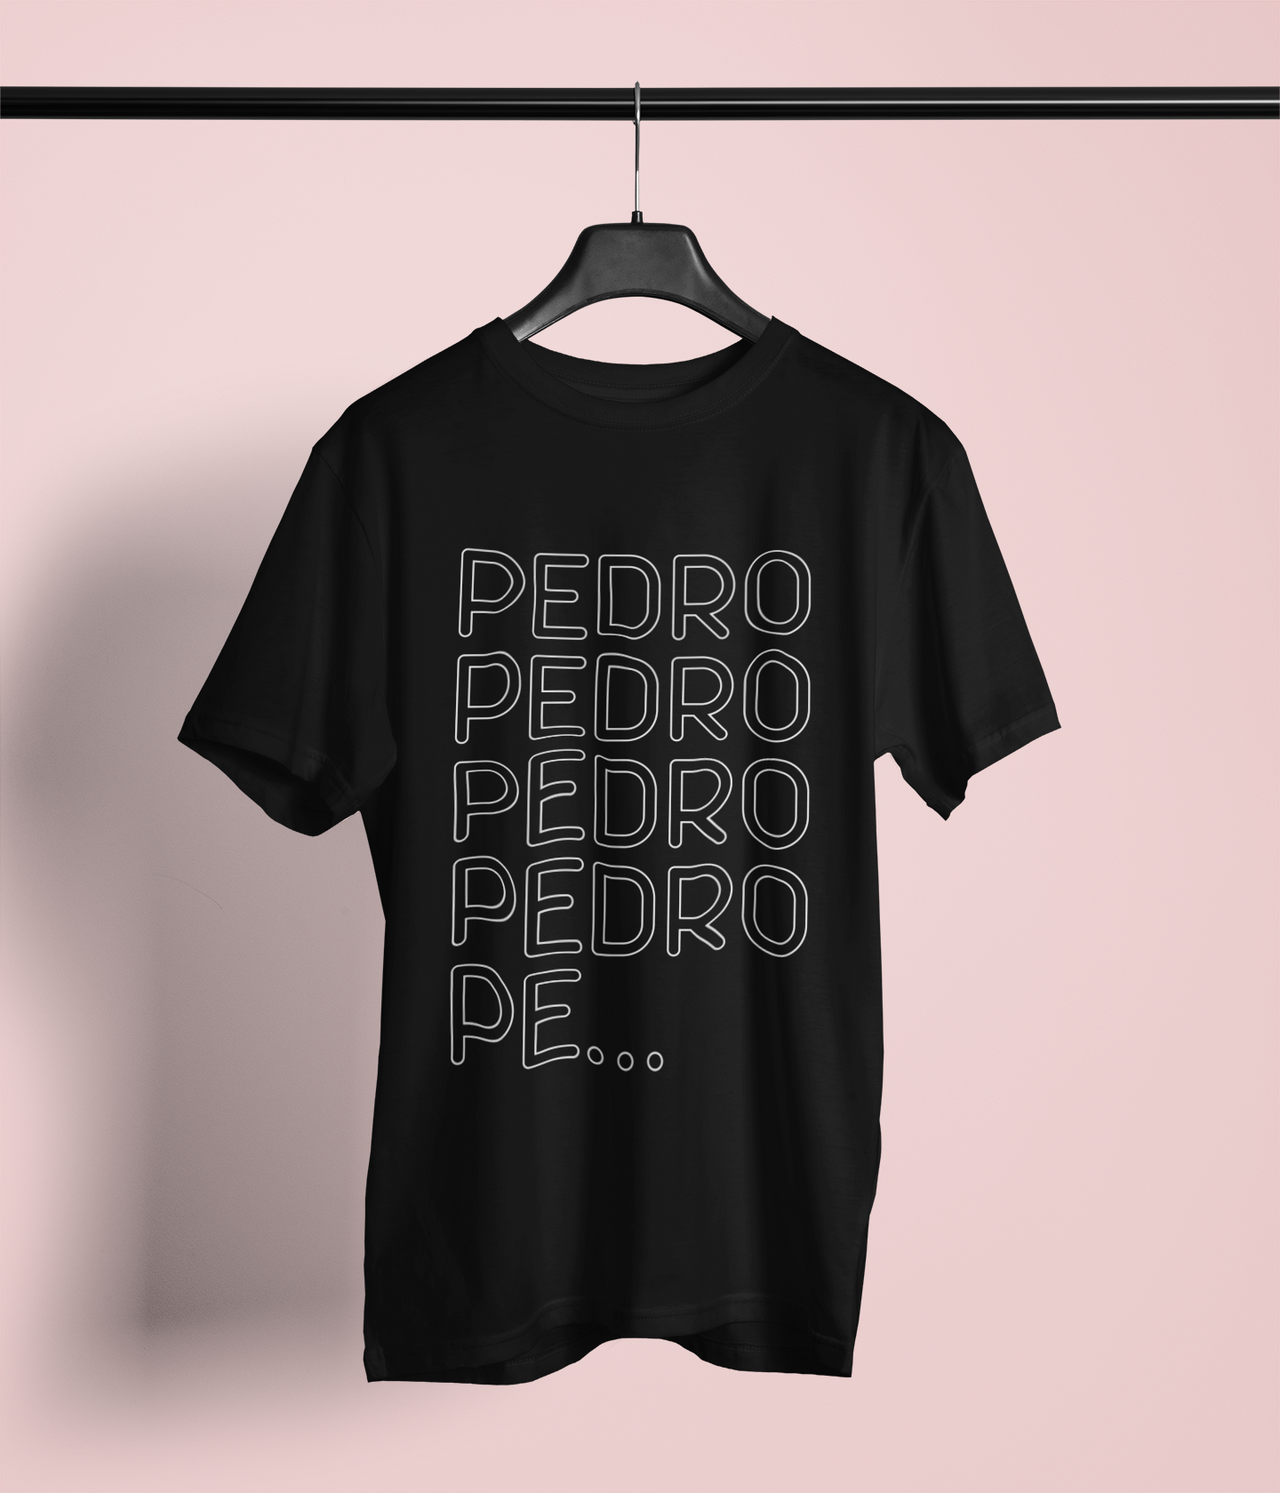 Juodi Unisex marškinėliai PEDRO PEDRO PEDRO